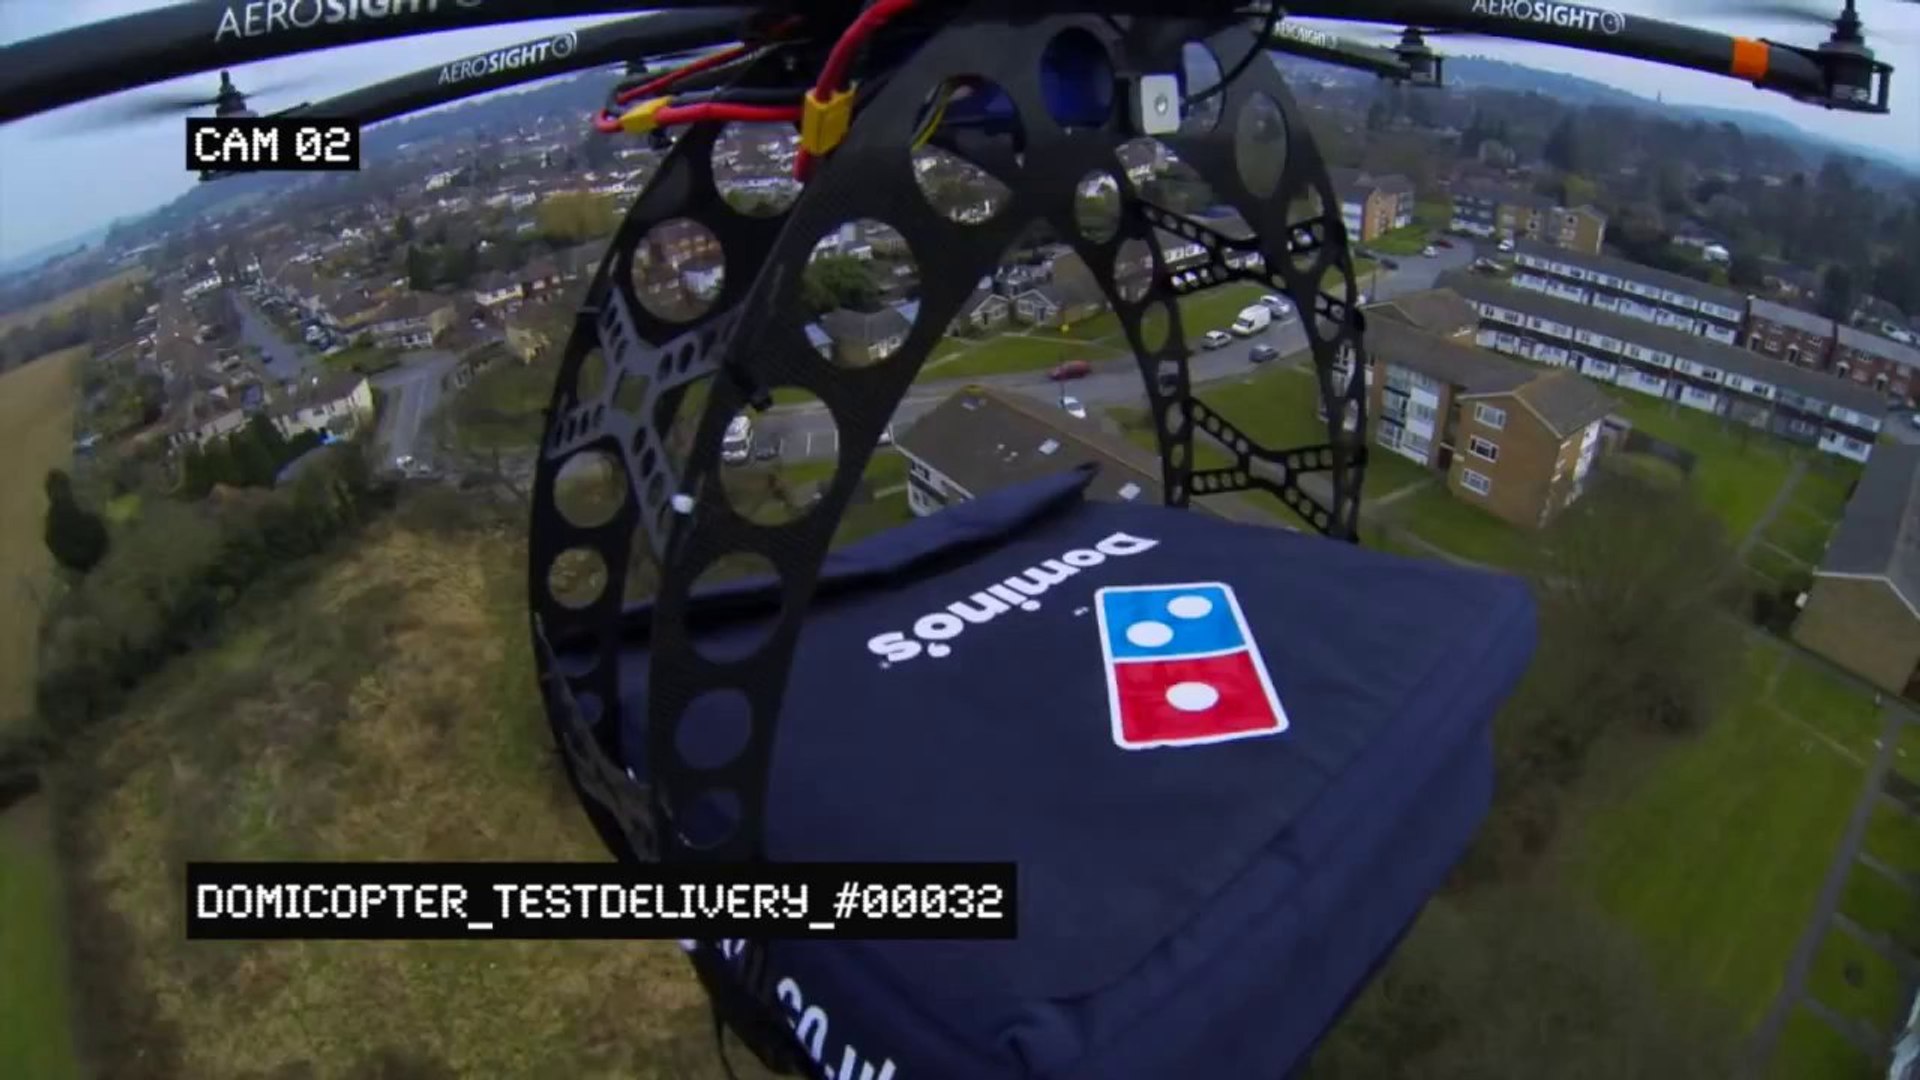 Drones : « Que ce soit pour livrer une pizza ou un défibrillateur, la  sécurité prime avant tout »